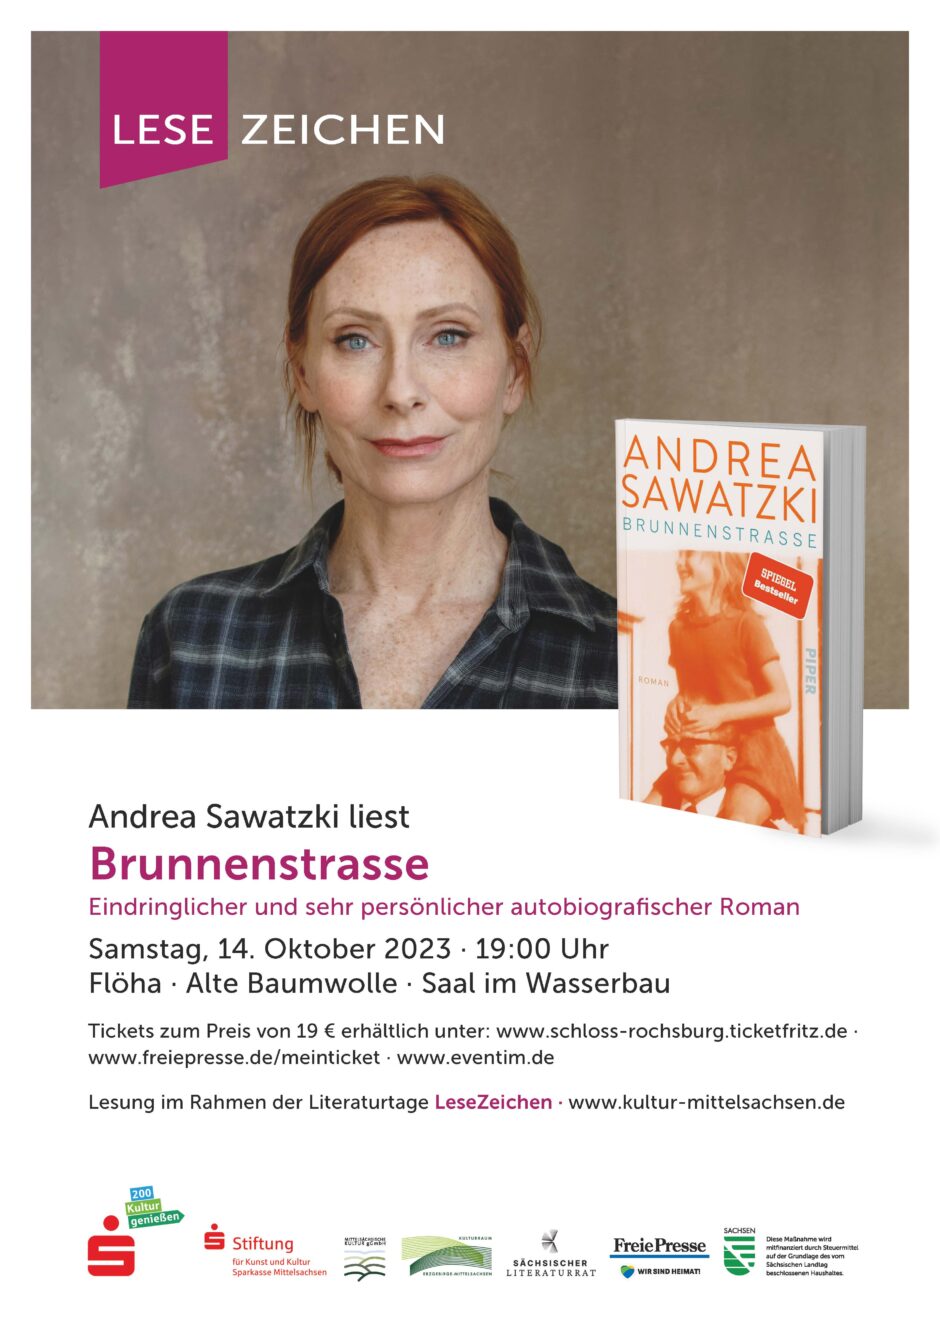 Literaturtage LESEZEICHEN: „Andrea Sawatzki“ am 14.10. in Flöha – Tickets gewinnen!